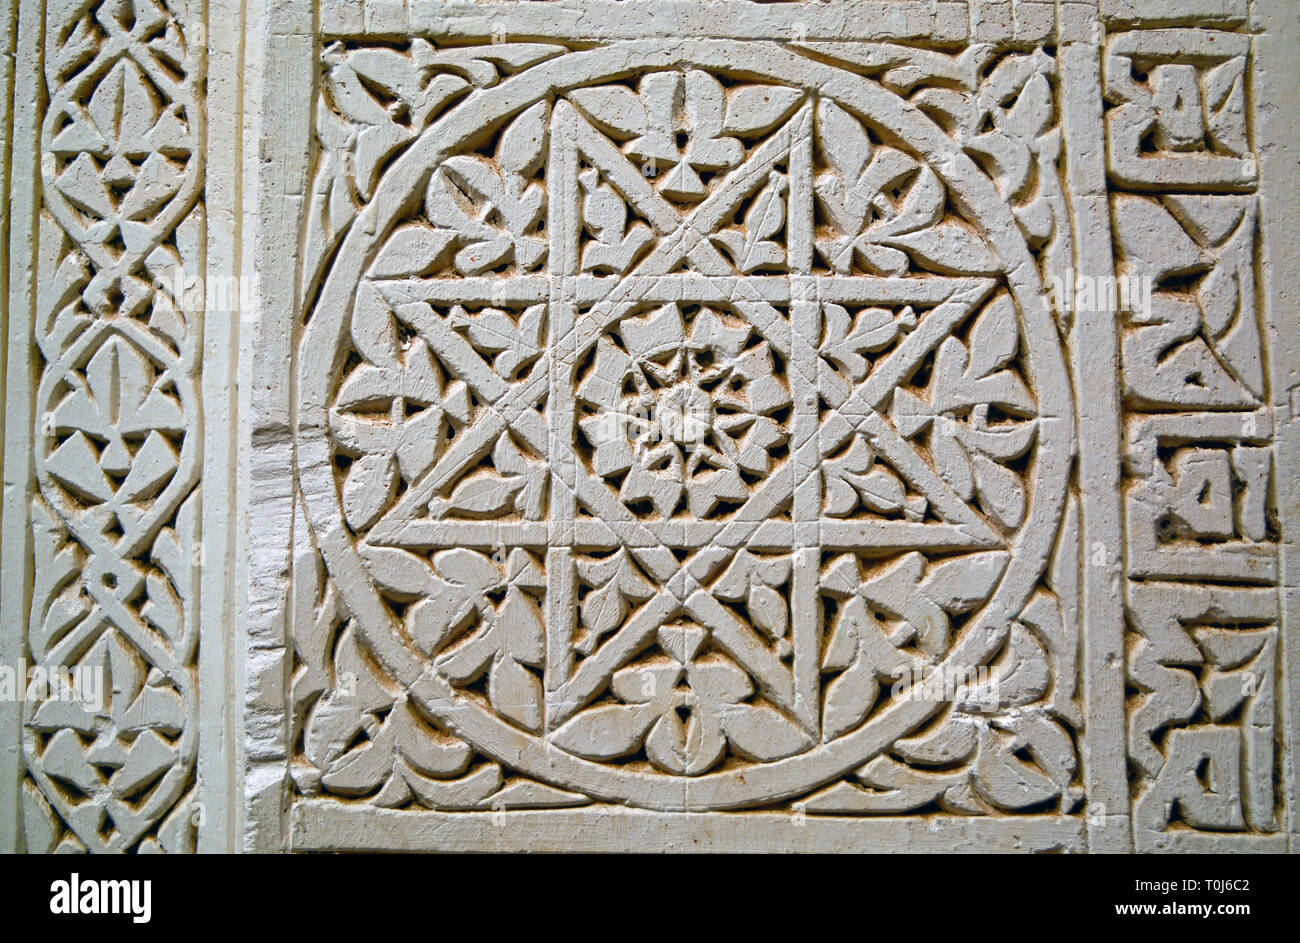 Libre d'un motif géométrique islamique sculptés en pierre de couleur claire (une étoile à l'intérieur d'un cercle) avec la calligraphie sur le côté droit. Banque D'Images